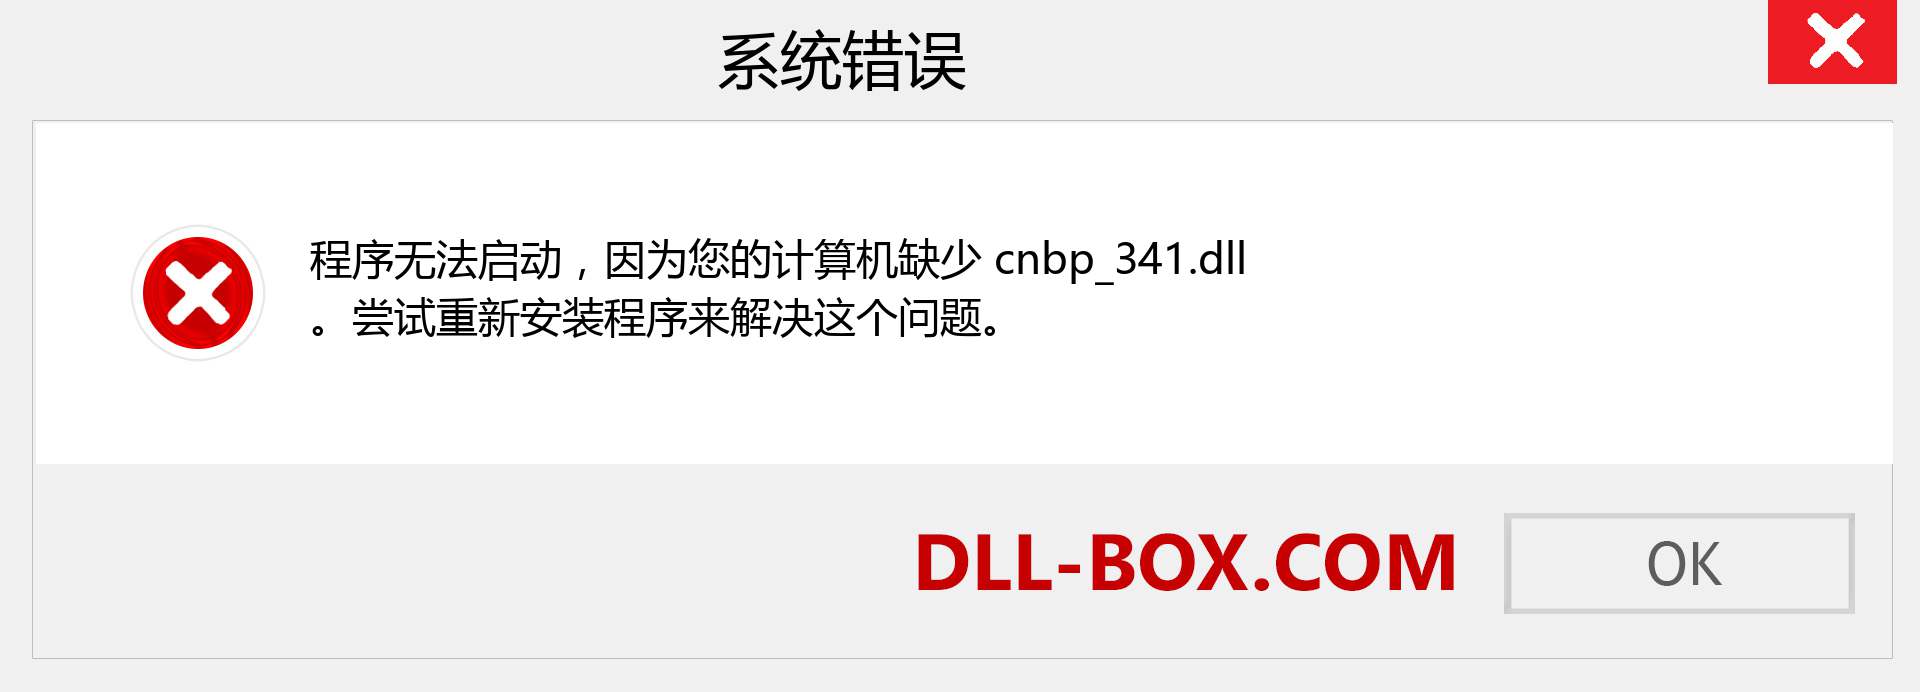 cnbp_341.dll 文件丢失？。 适用于 Windows 7、8、10 的下载 - 修复 Windows、照片、图像上的 cnbp_341 dll 丢失错误